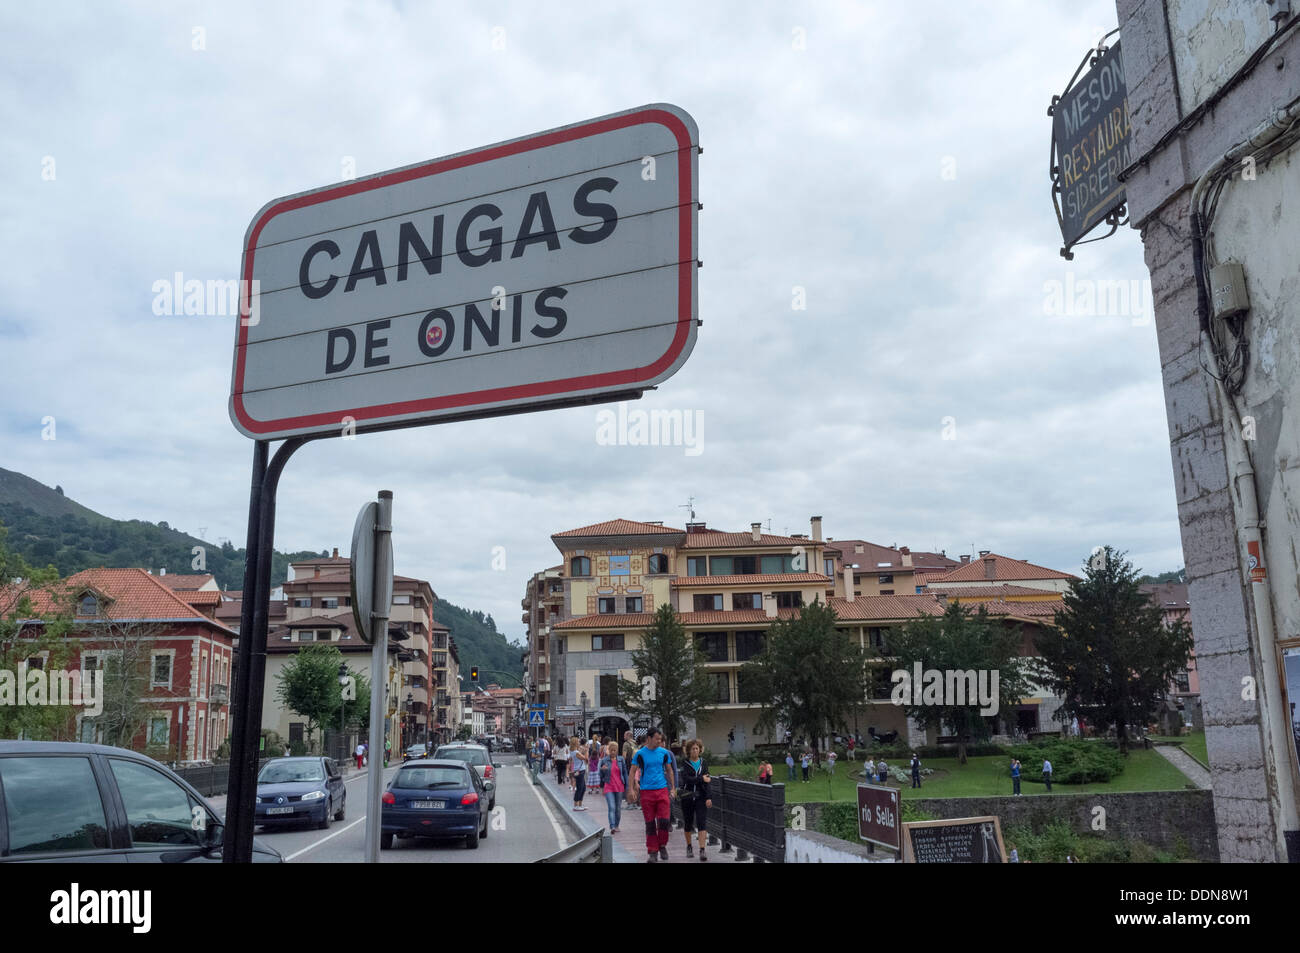 Cangas de Onis, Asturias, Espagne. Panneau routier. Famouns pour le pont romain sur la rivière Sella. Banque D'Images